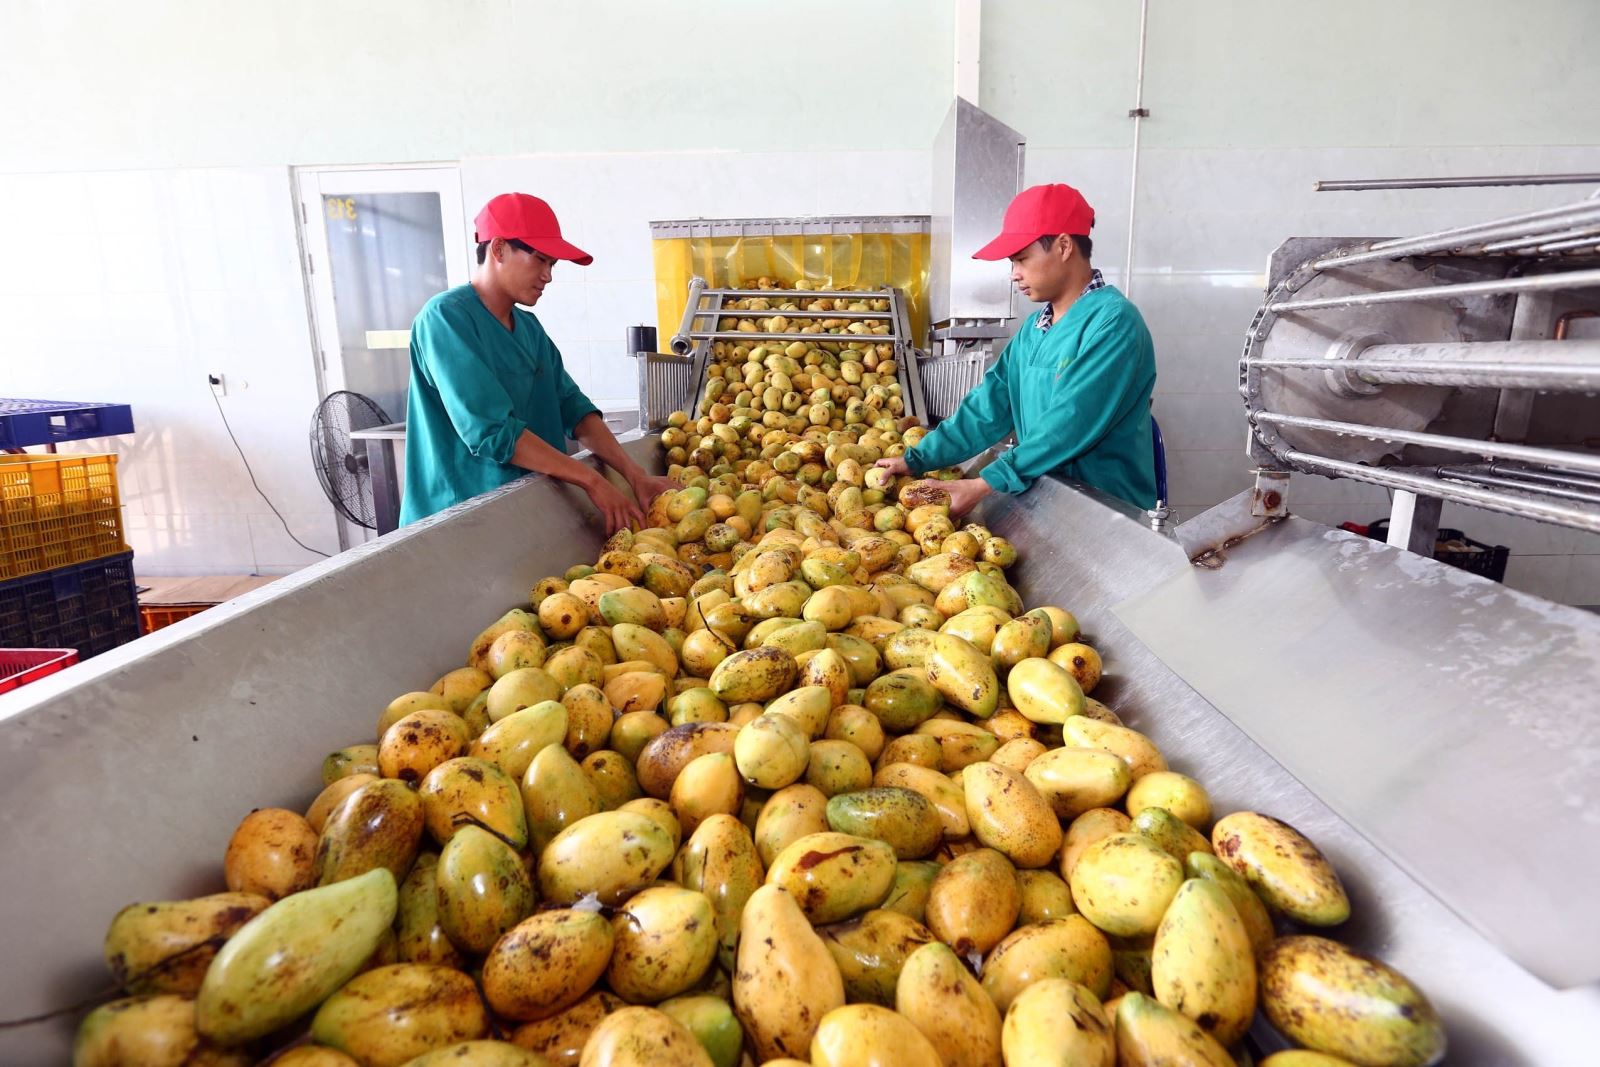 Chế biến, sơ chế hoa quả để giữ được sản phẩm tươi ngon ngay sau khi thu hoạch là yêu cầu căn bản cho xuất khẩu nông sản. Ảnh: Danh Lam/TTXVN